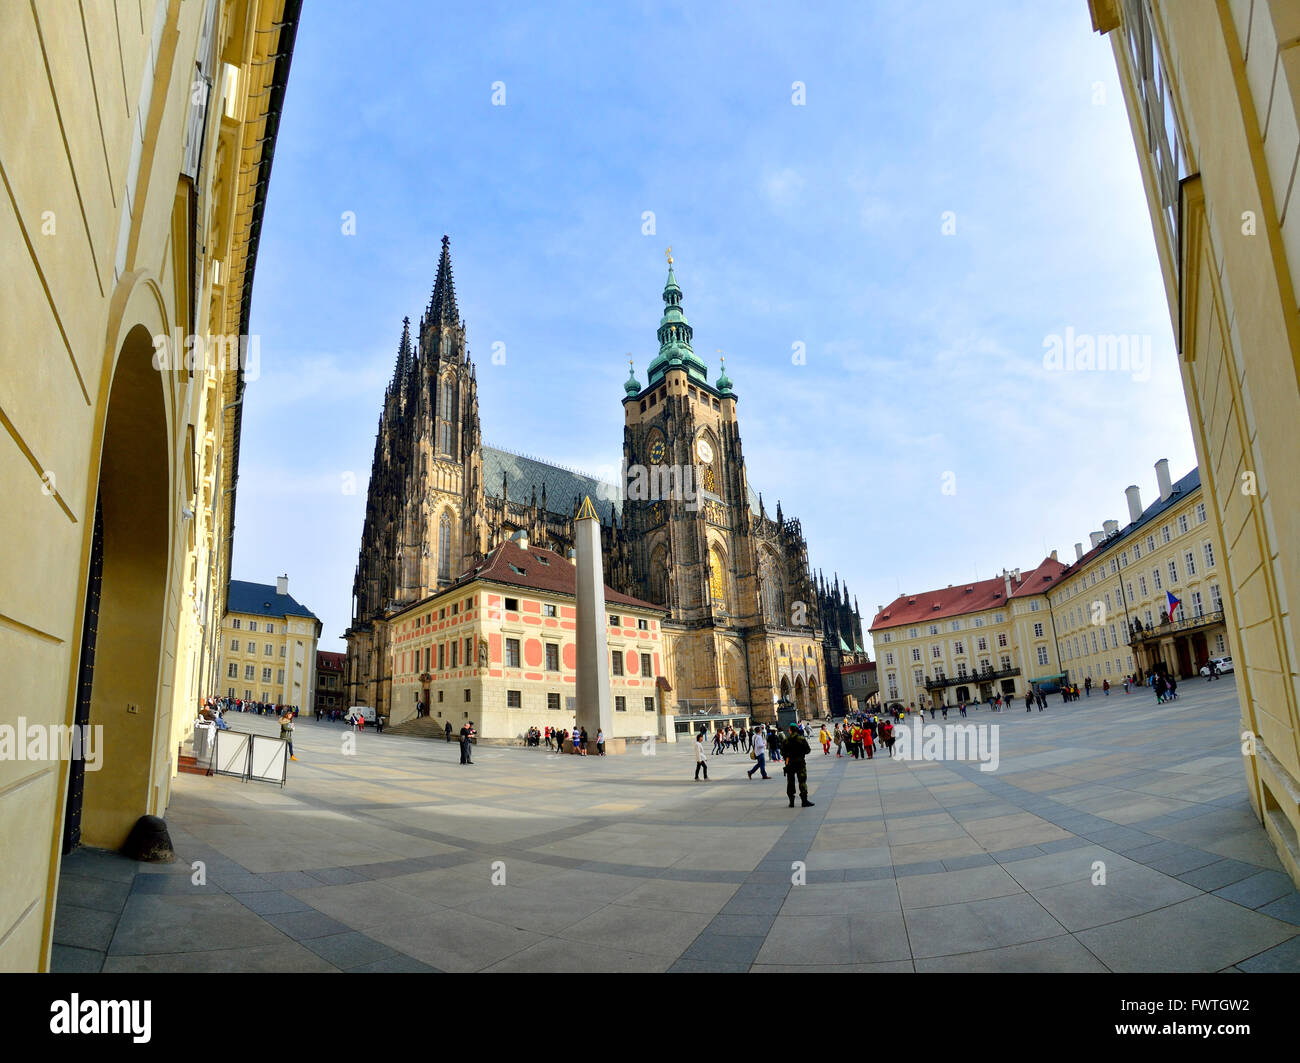 Prag, Tschechische Republik. St-Veits-Dom (seit 1997, die Kathedrale des Heiligen Vitus, Wenzel und Adalbert)... Stockfoto